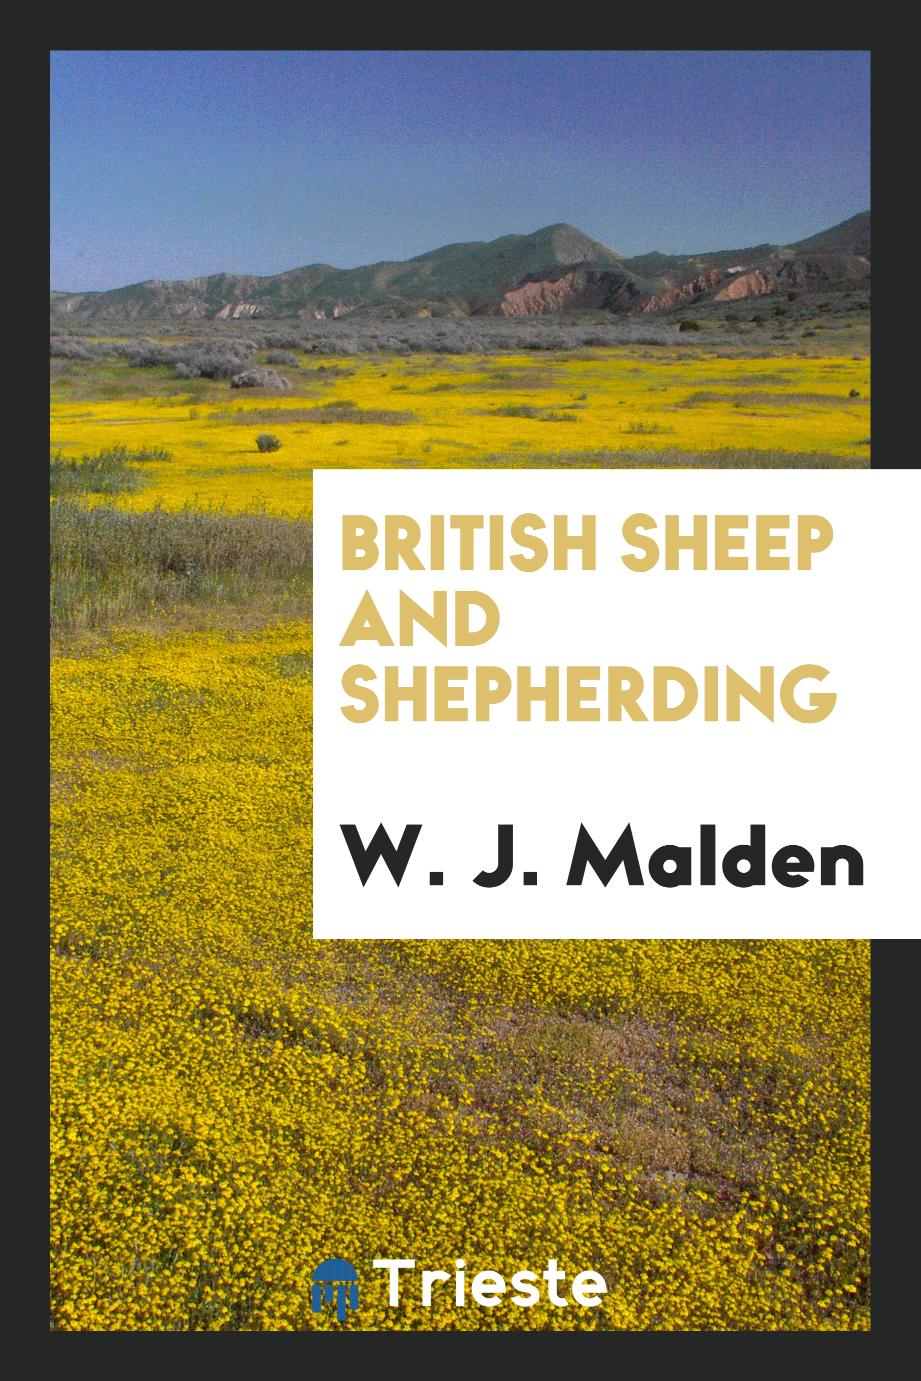 British sheep and shepherding